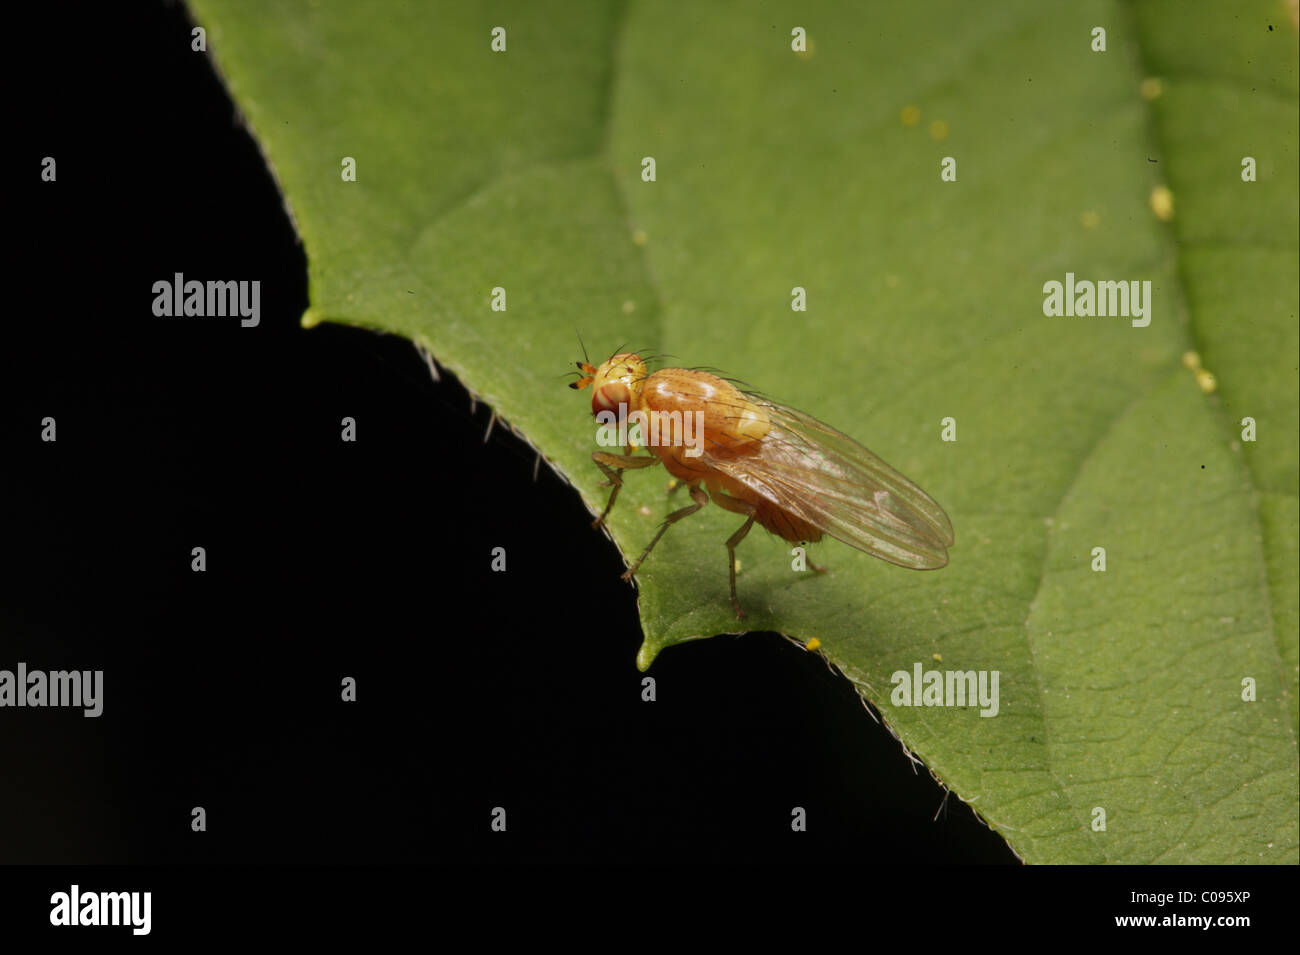 Fly  Drosophila sitting on a leaf Stock Photo